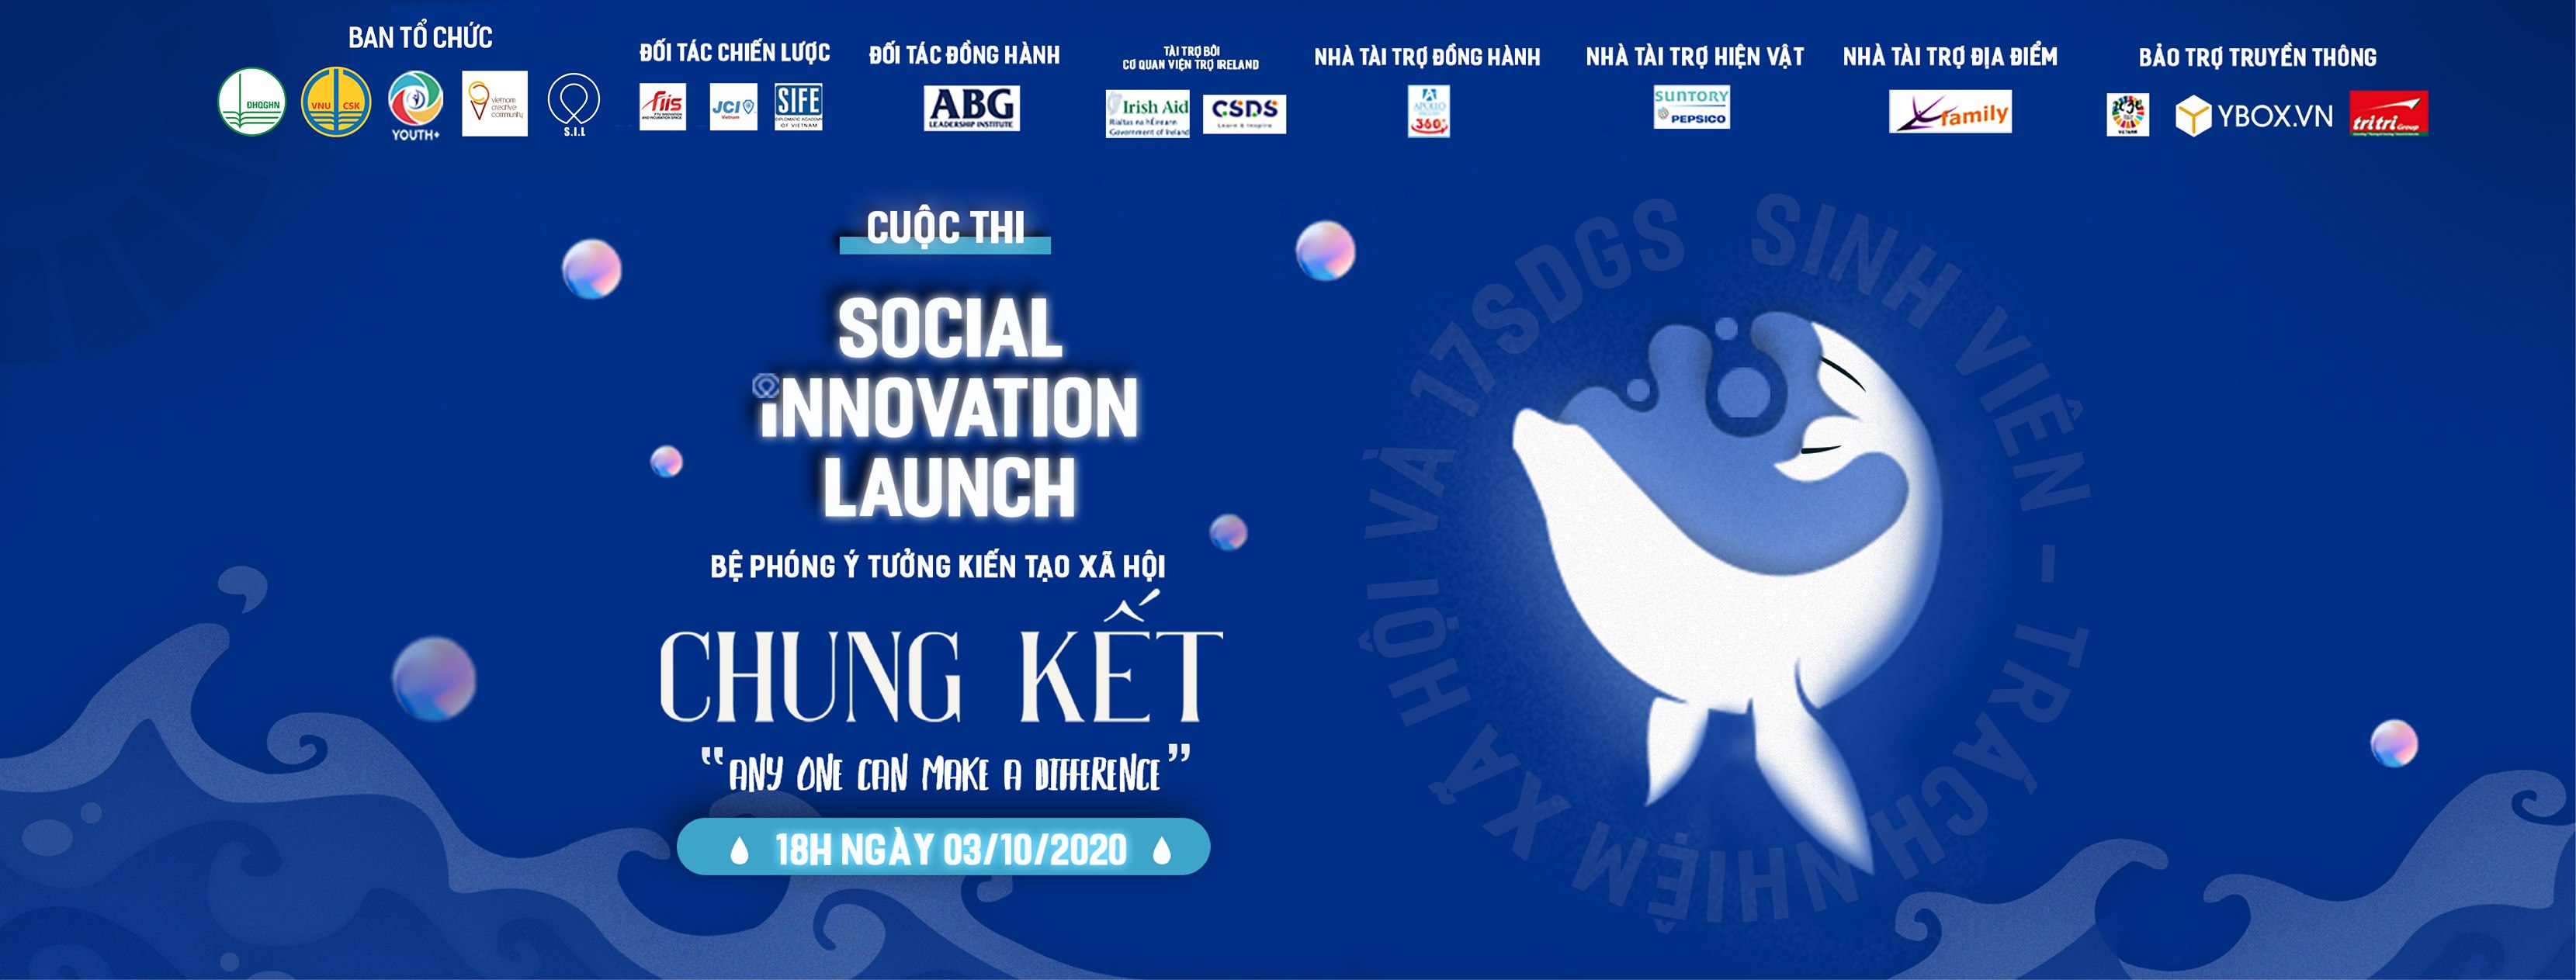 Chung kết cuộc thi Social Innovation Launch 2020 - Bệ phóng ý tưởng kiến tạo xã hội